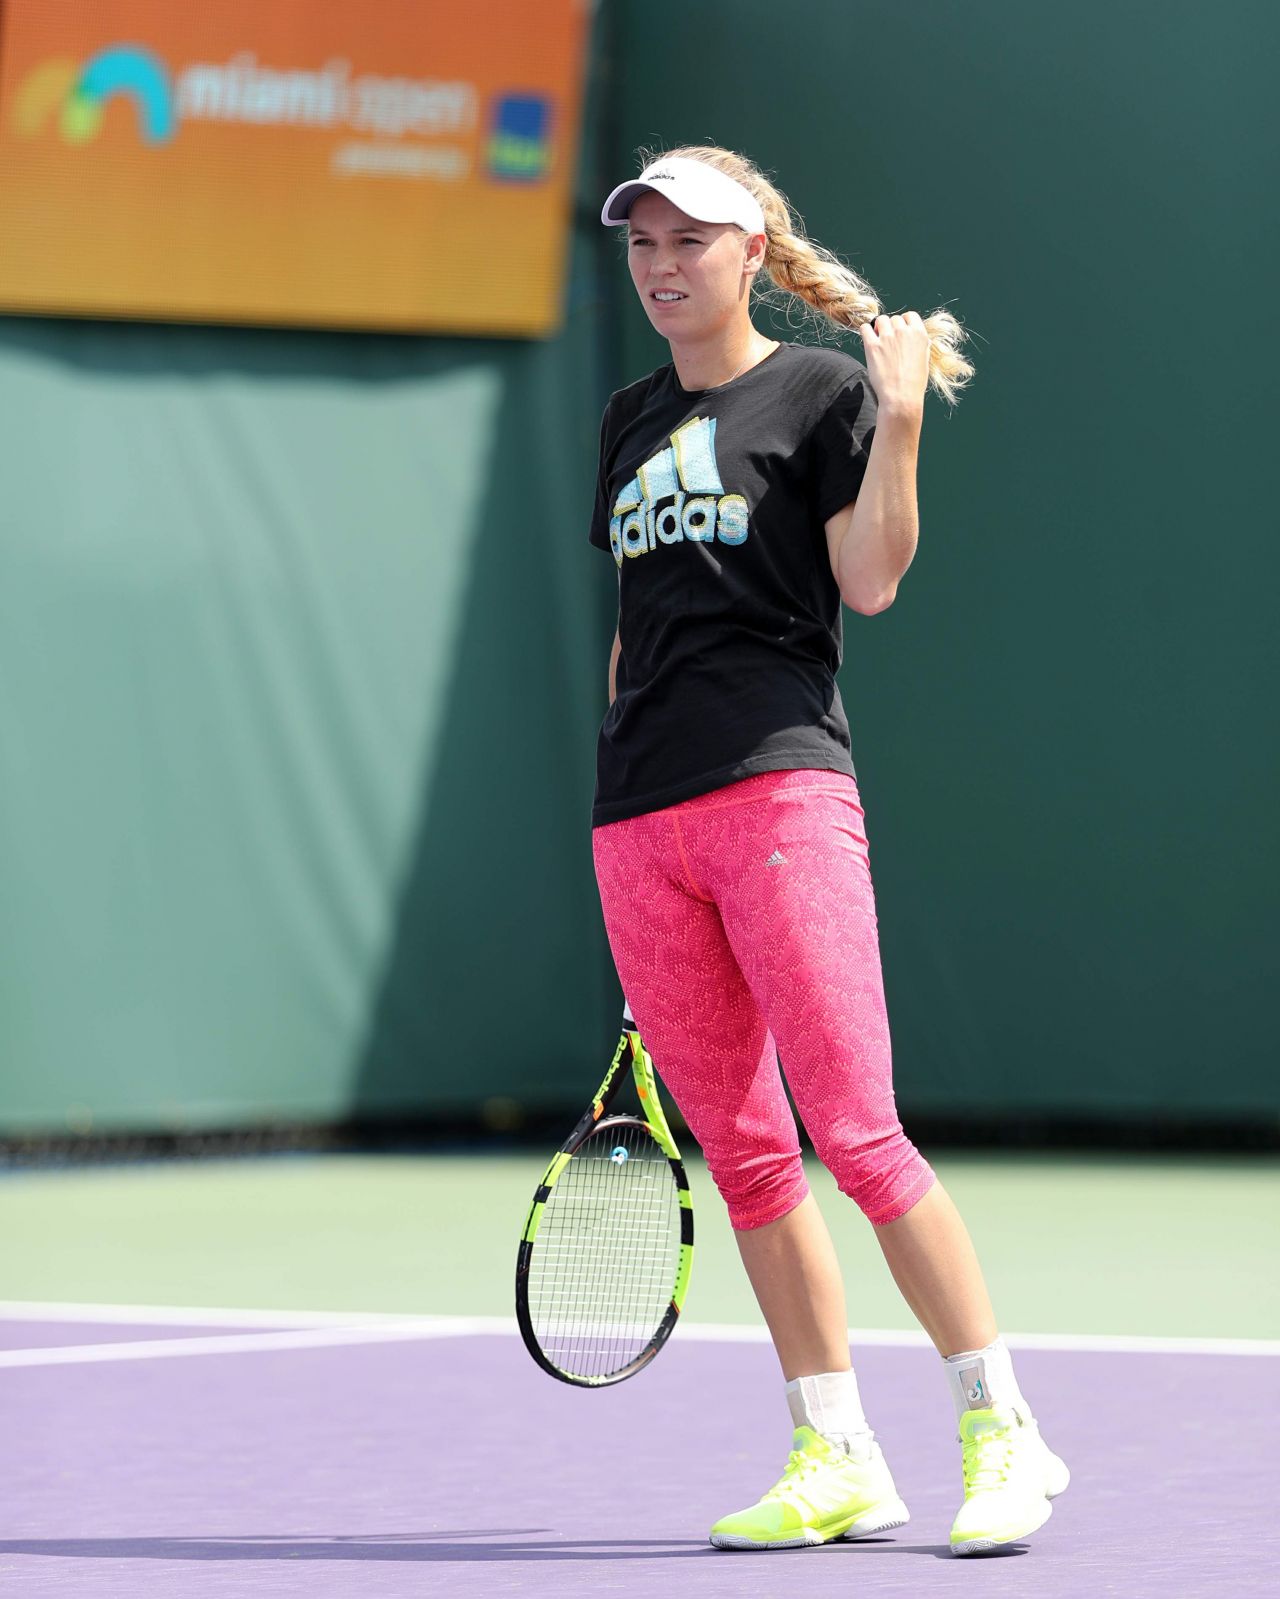 Caroline Wozniacki On The Practice Court - Miami Open in Key Biscayne 3/23/ 20171280 x 1599